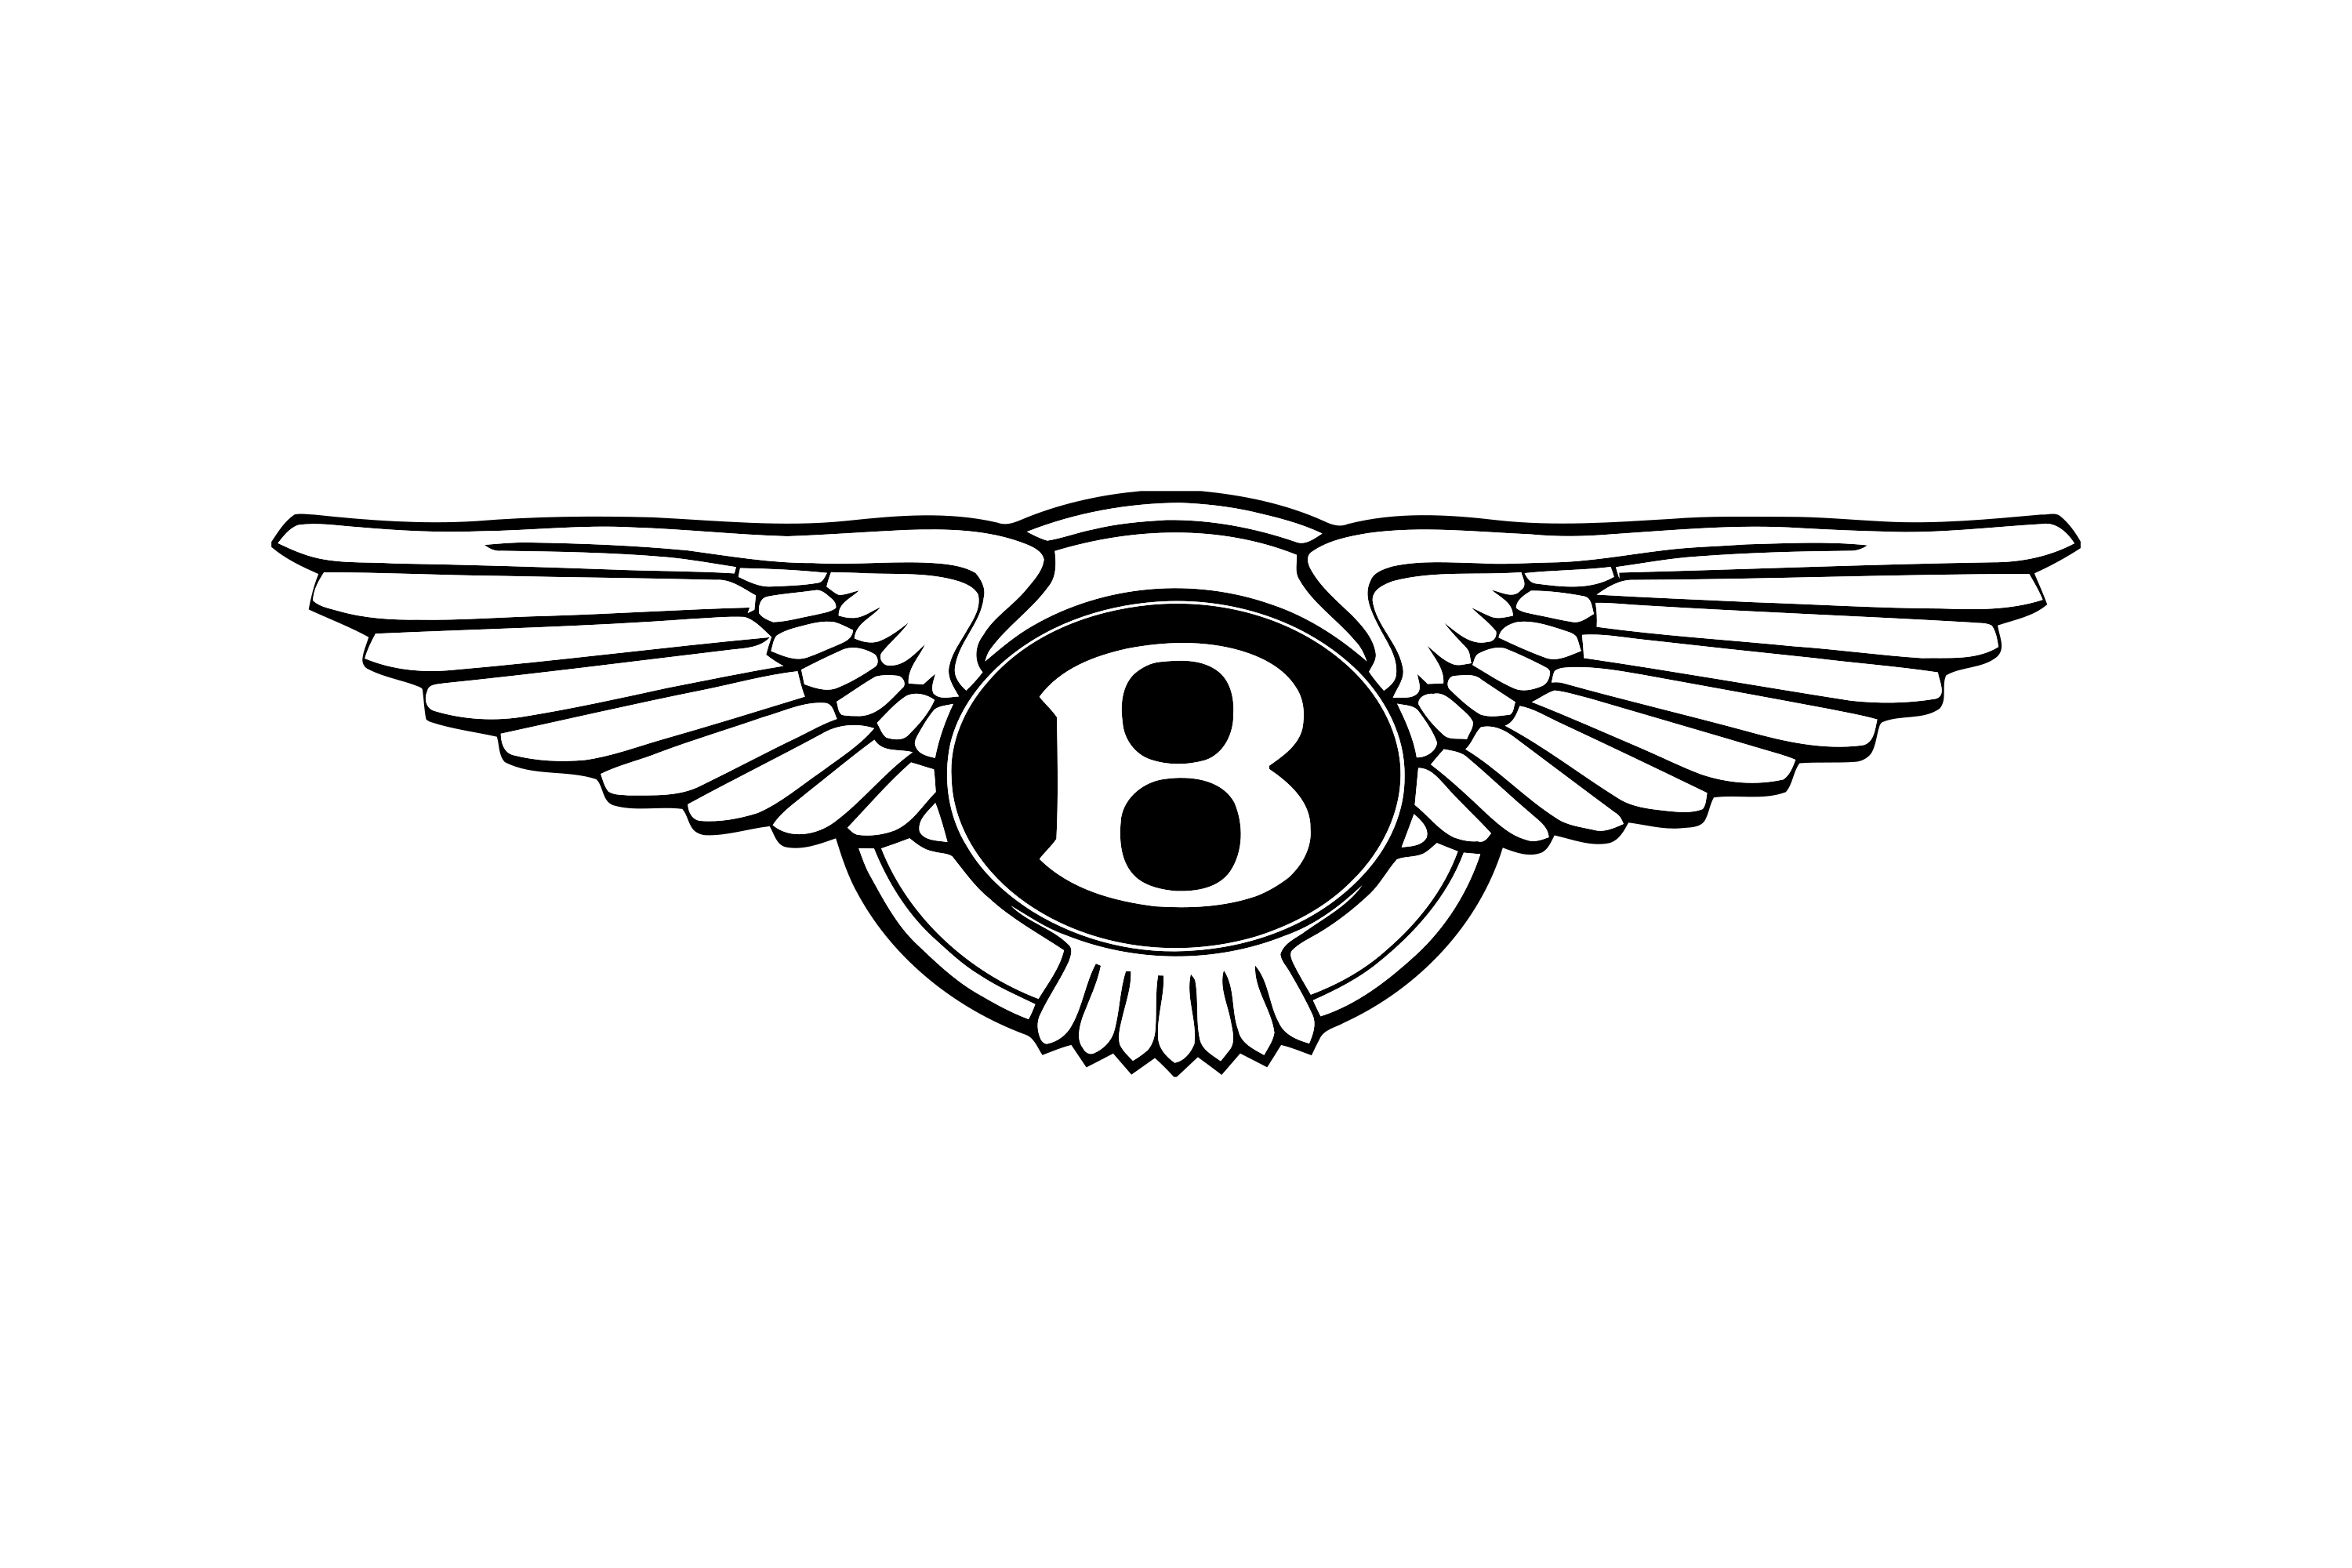 Image Result For Bentley Logo